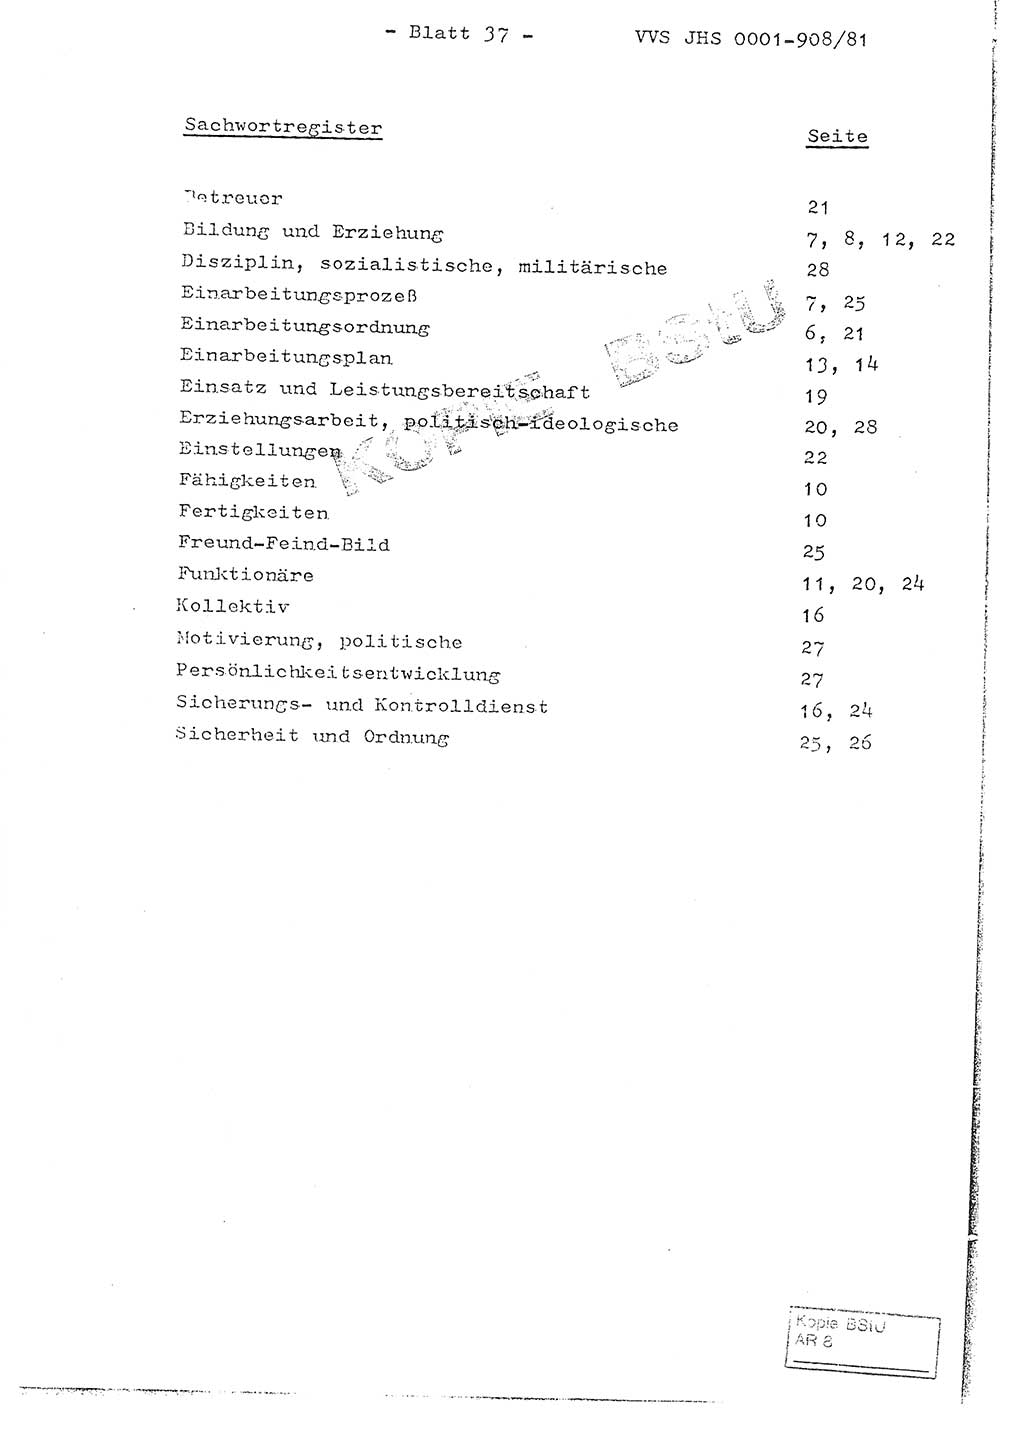 Fachschulabschlußarbeit Oberleutnant Wolfgang Wittmann (Abt. ⅩⅣ), Ministerium für Staatssicherheit (MfS) [Deutsche Demokratische Republik (DDR)], Juristische Hochschule (JHS), Vertrauliche Verschlußsache (VVS) o001-908/82, Potsdam 1982, Blatt 37 (FS-Abschl.-Arb. MfS DDR JHS VVS o001-908/82 1982, Bl. 37)